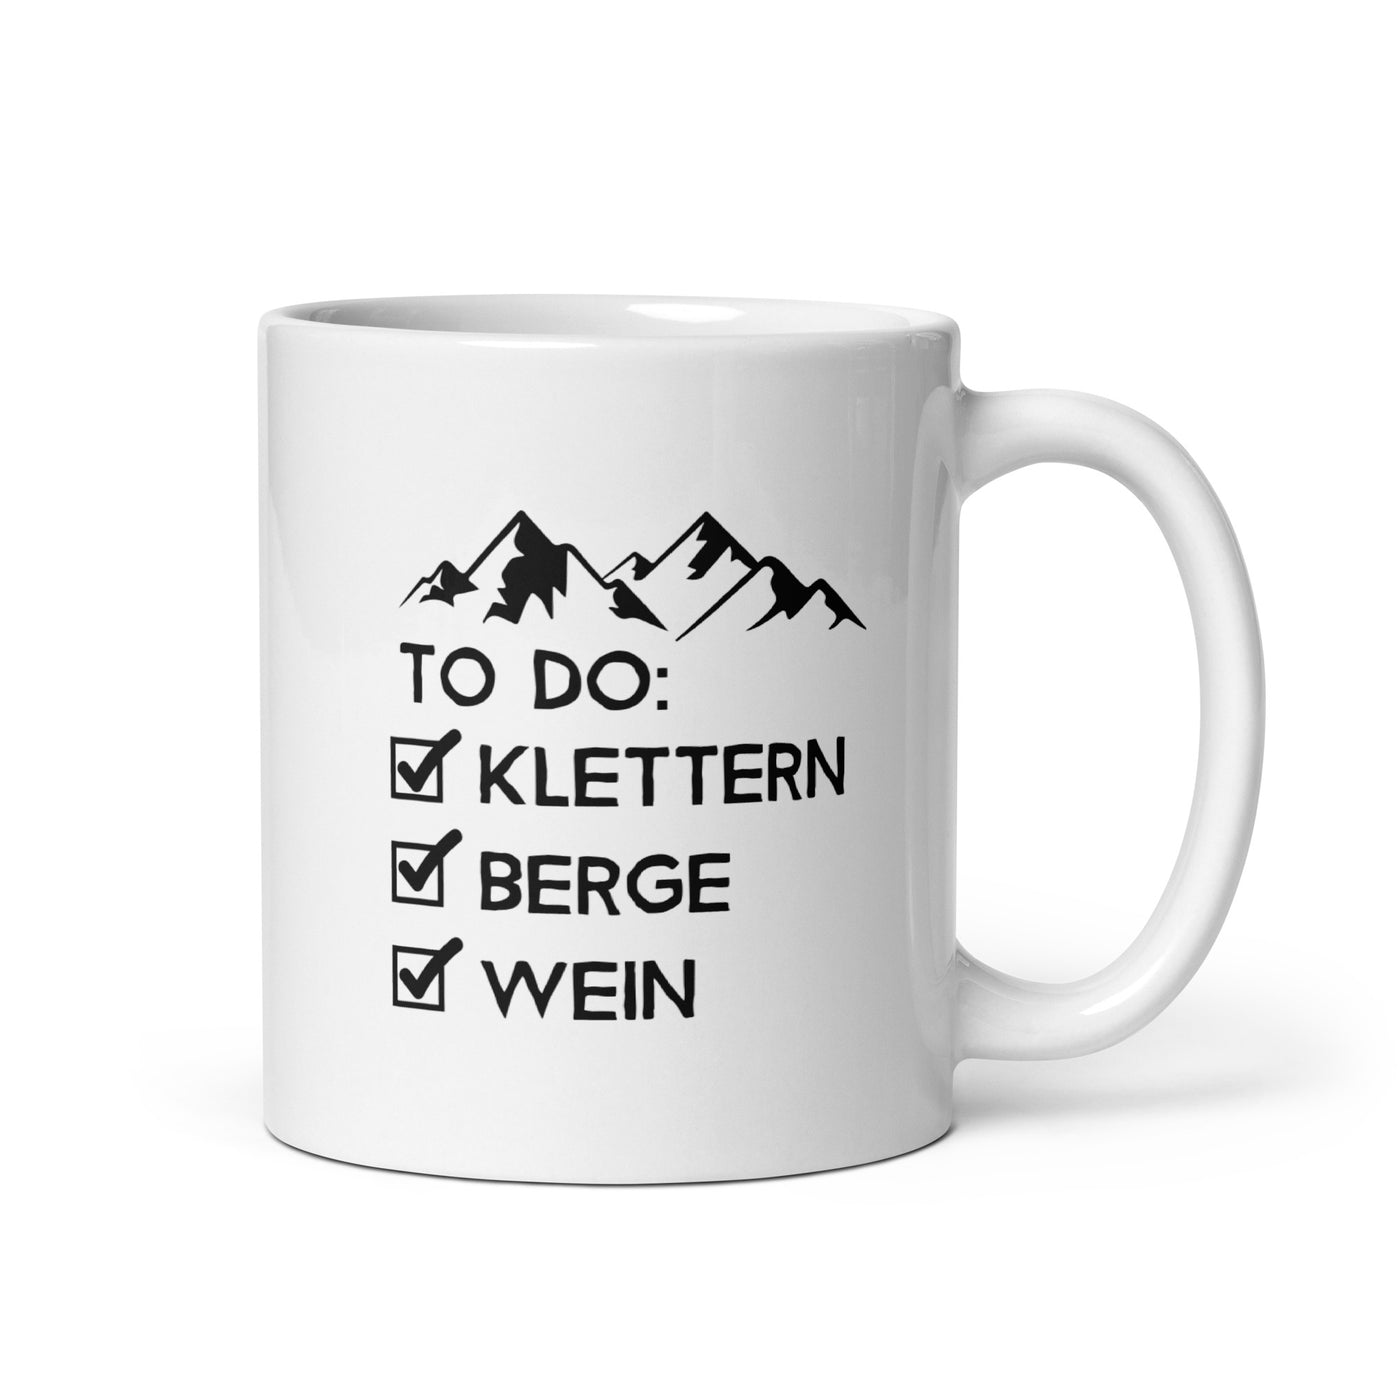 To Do Liste - Klettern, Berge, Wein - Tasse klettern